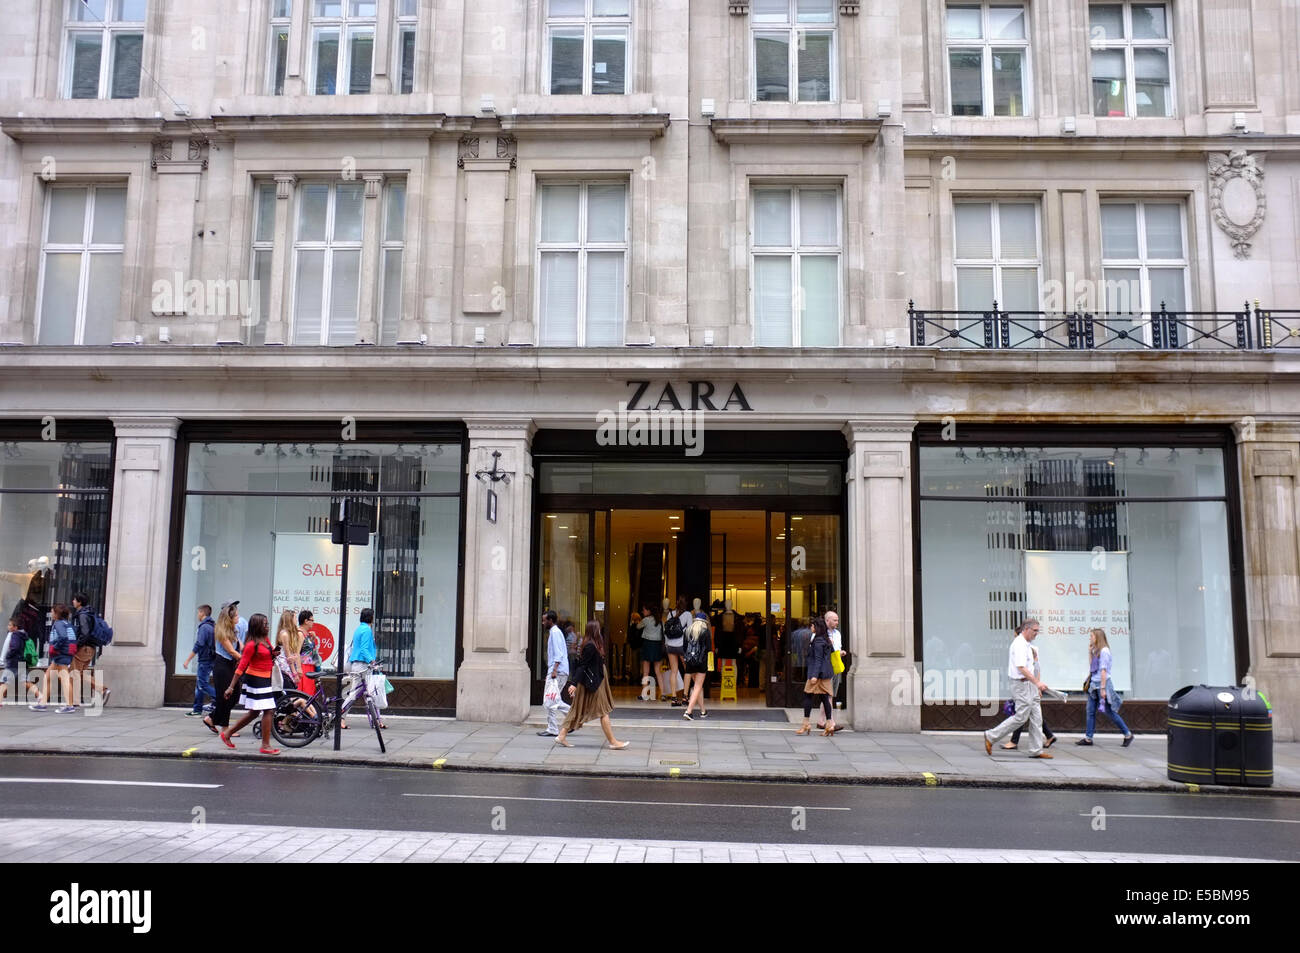 ZARA store on Regent Street, London 